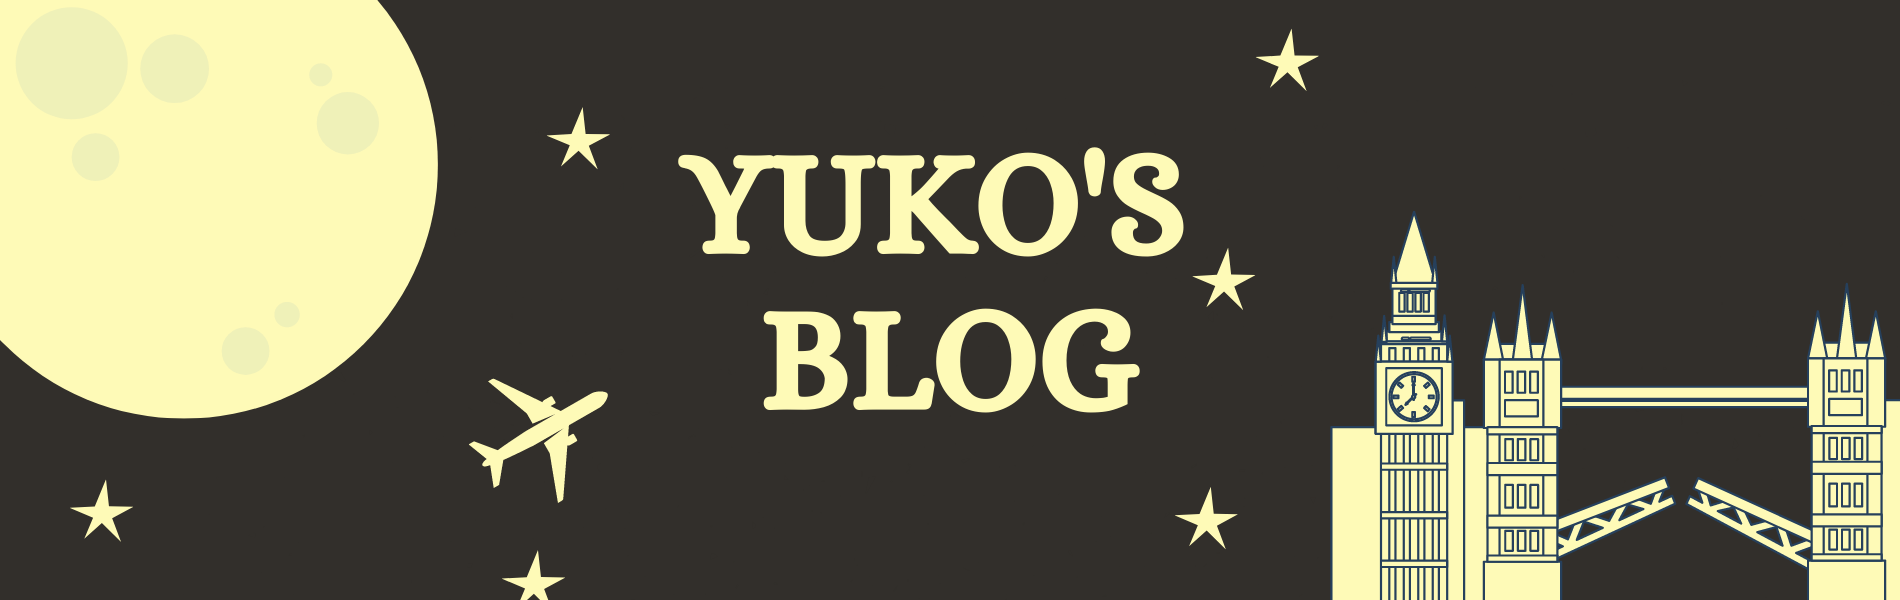 Yuko's Blog